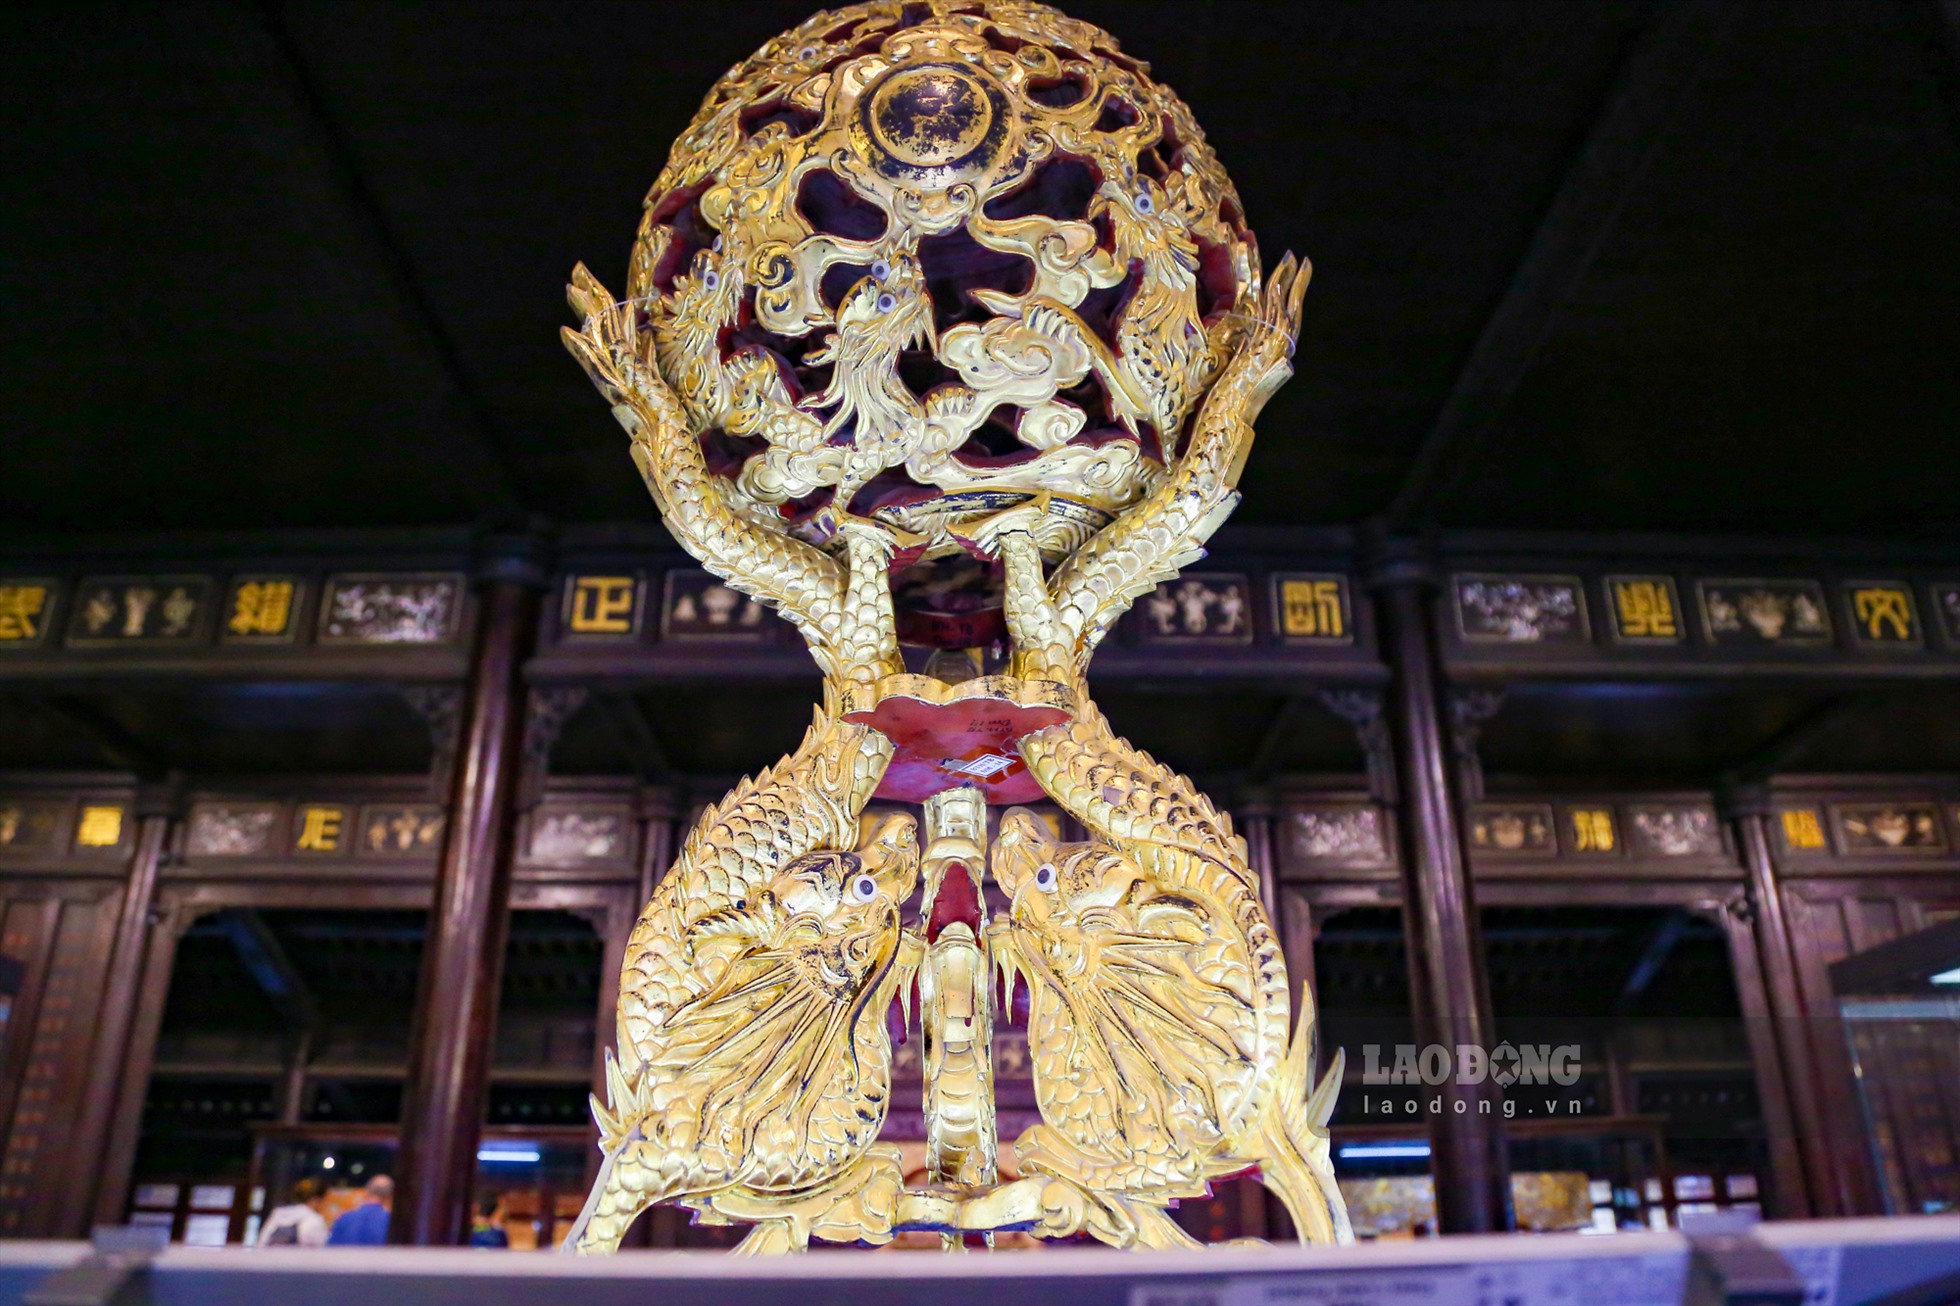 Nổi bật khi bước vào bảo tàng là Quả cầu cửu long sơn thếp với chất liệu từ gỗ quý thếp vàng. Đây là một món đồ được trưng bày trong cung triều Nguyễn với tạo hình 9 con rồng vờn quanh ngọc châu.